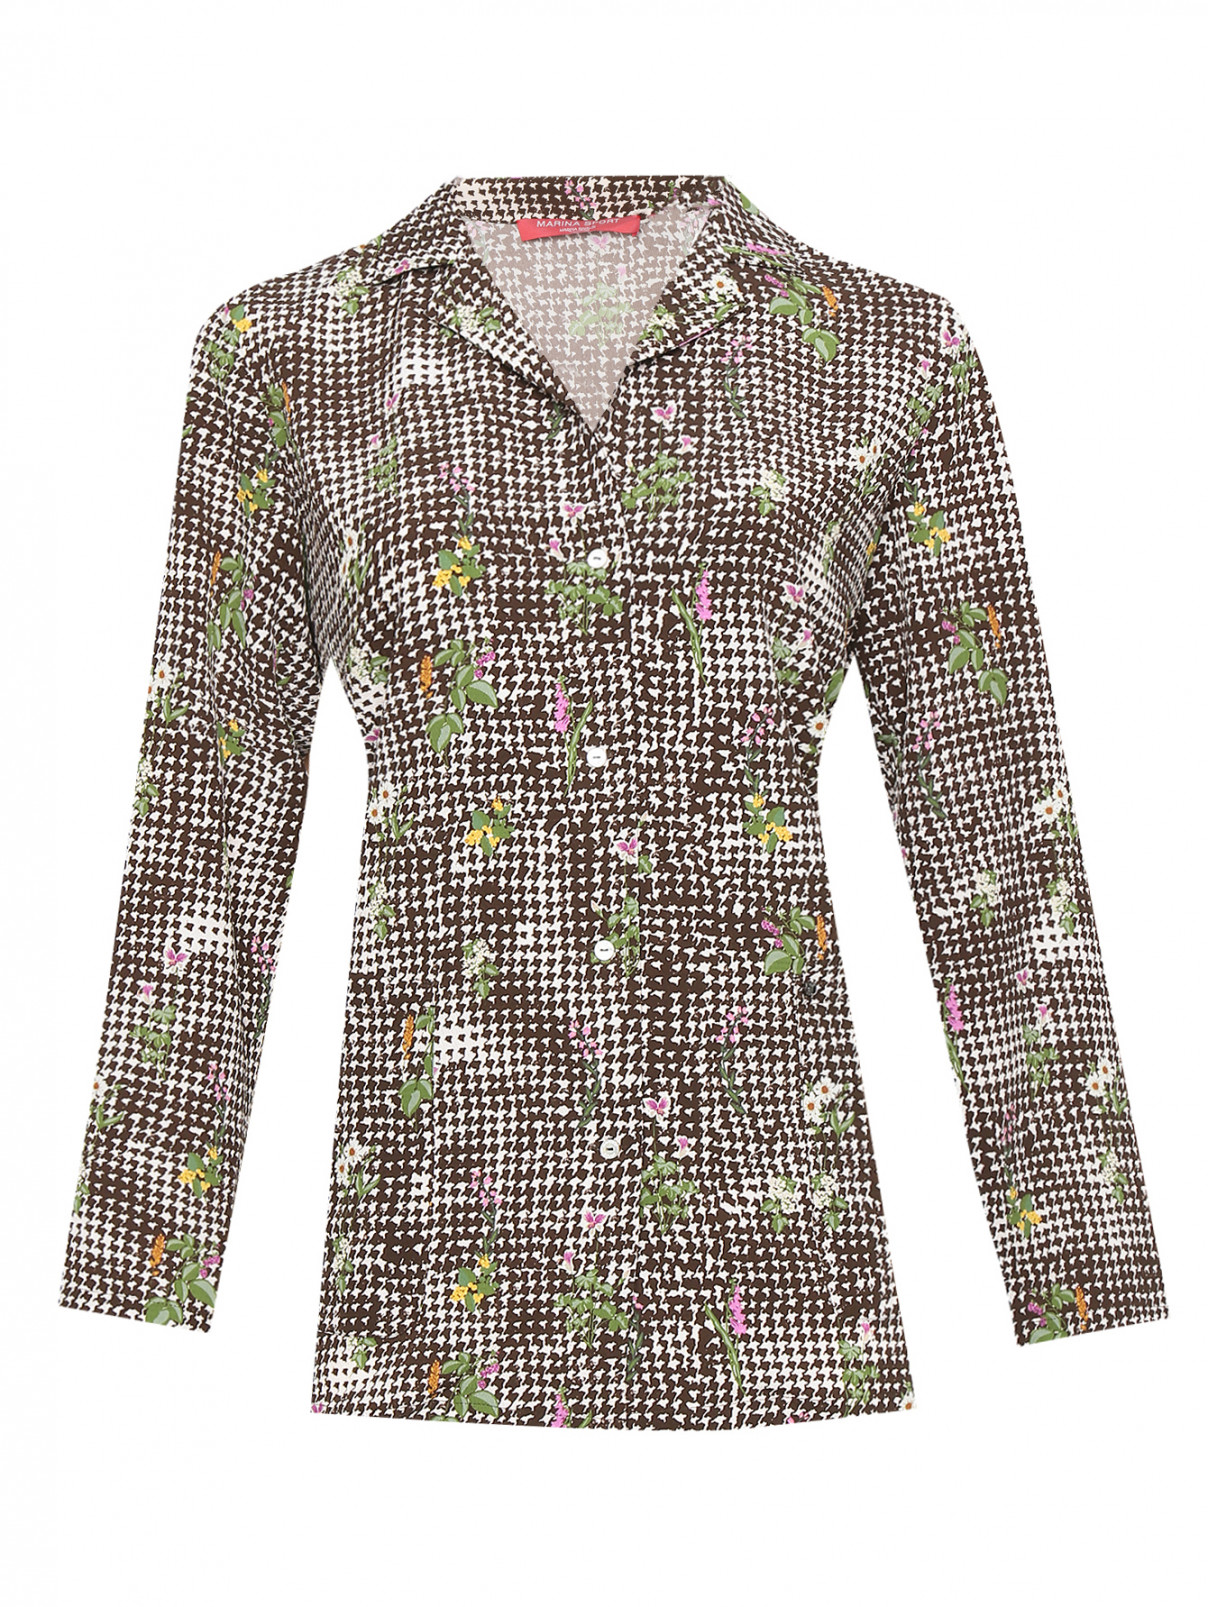 Блуза с цветочным узором и карманами на пуговицах Marina Rinaldi  –  Общий вид  – Цвет:  Узор